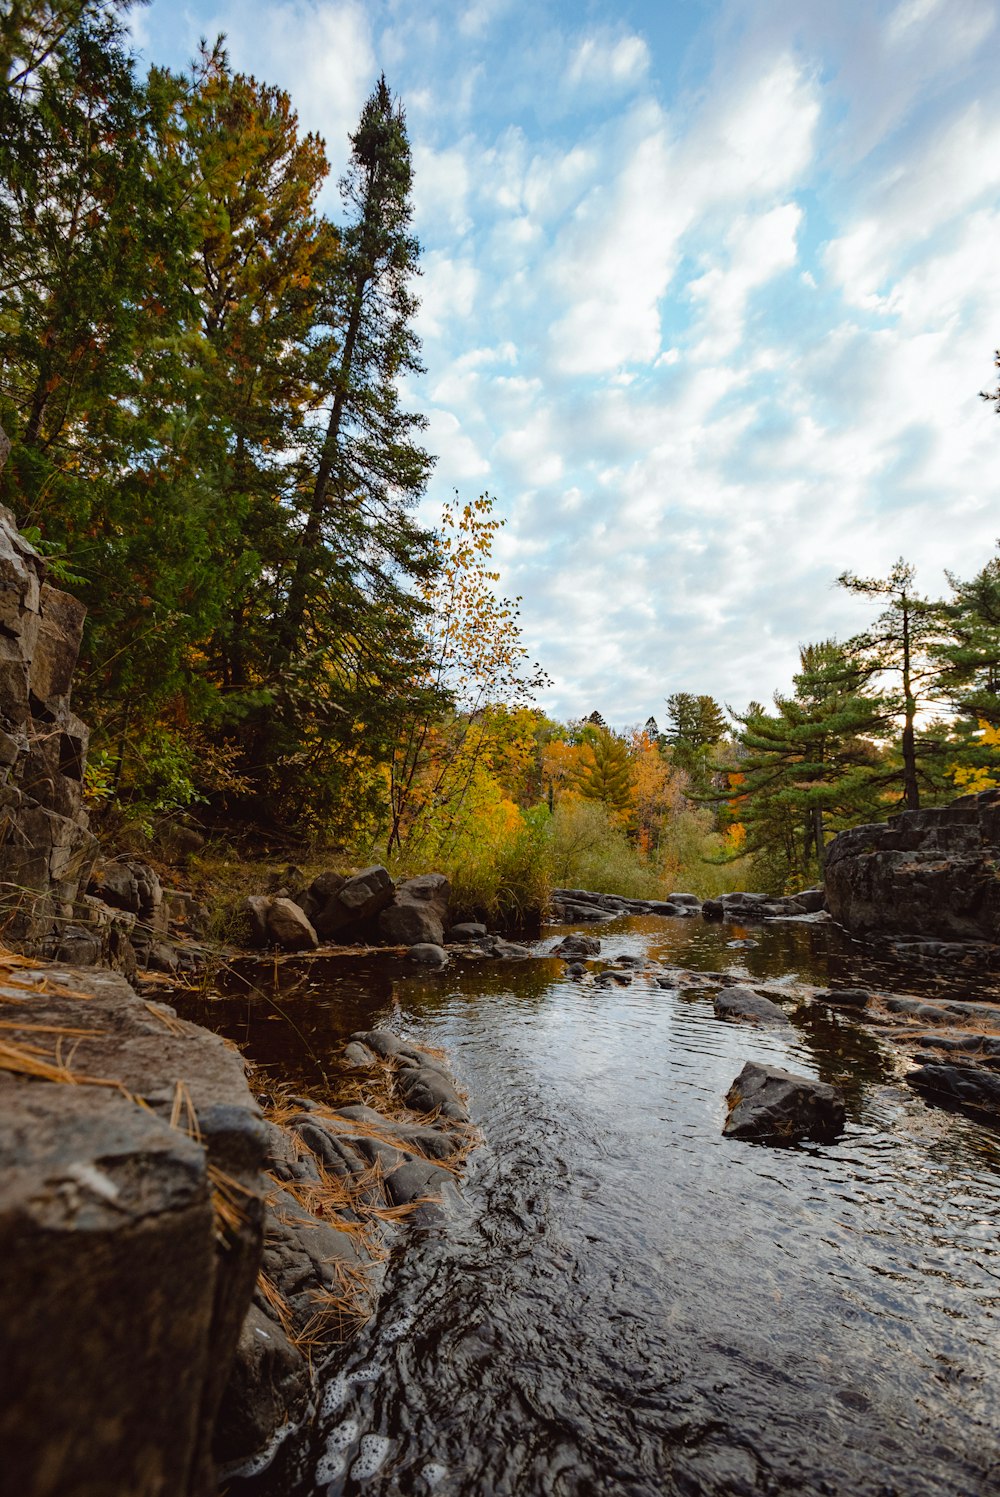 Ein Fluss mit Felsen und Bäumen